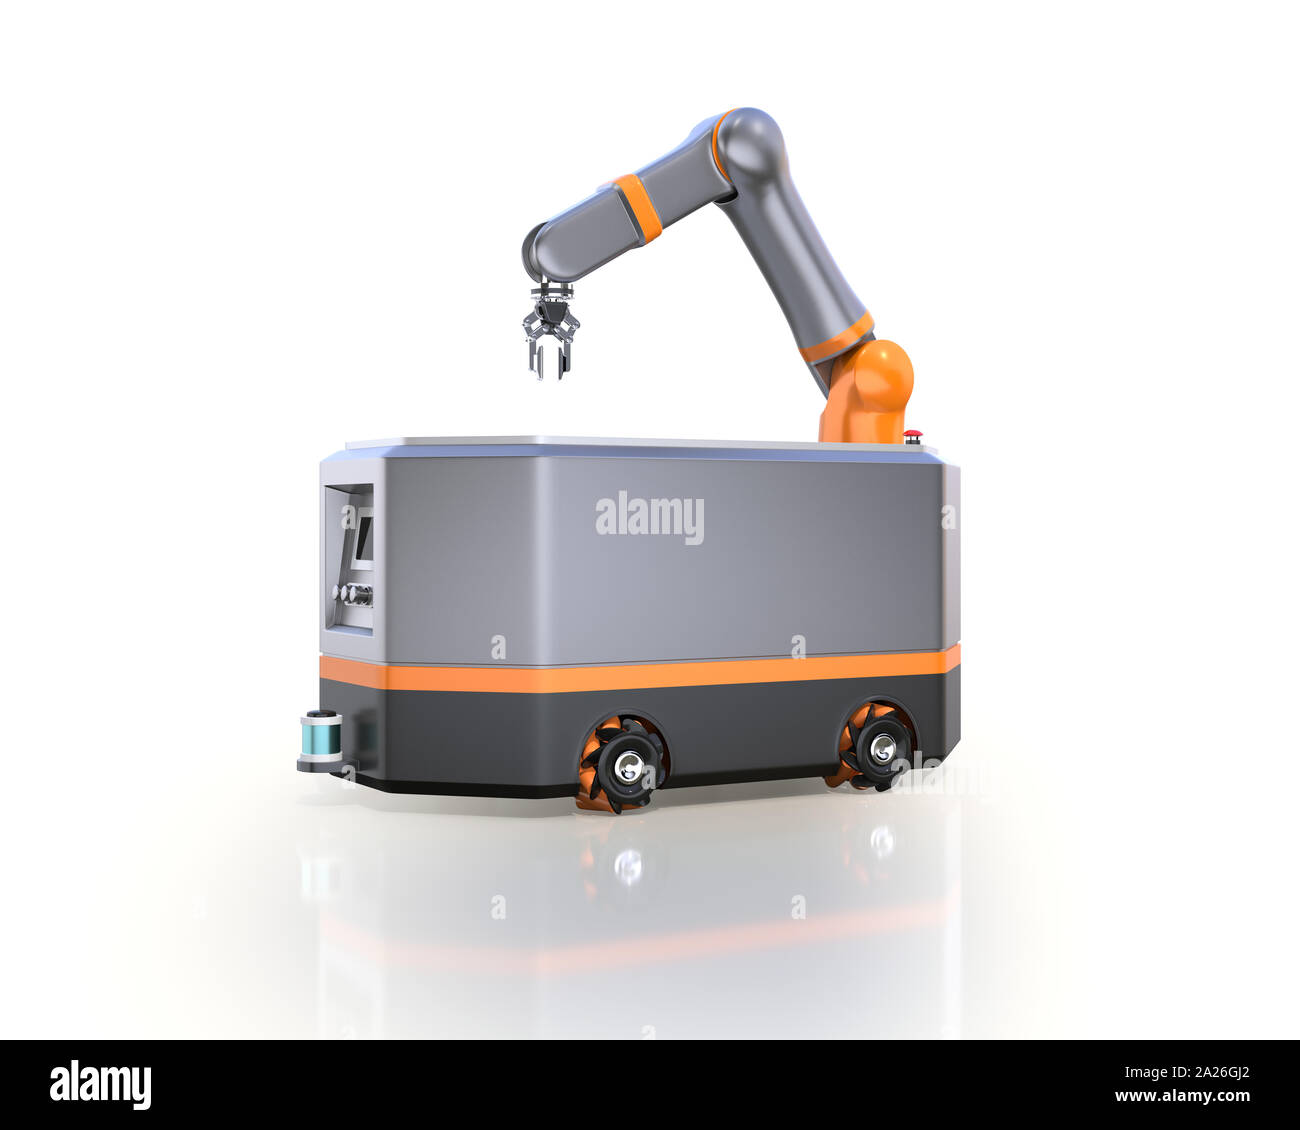 Robot móvil AGV sobre fondo blanco. Representación 3D imagen. Foto de stock